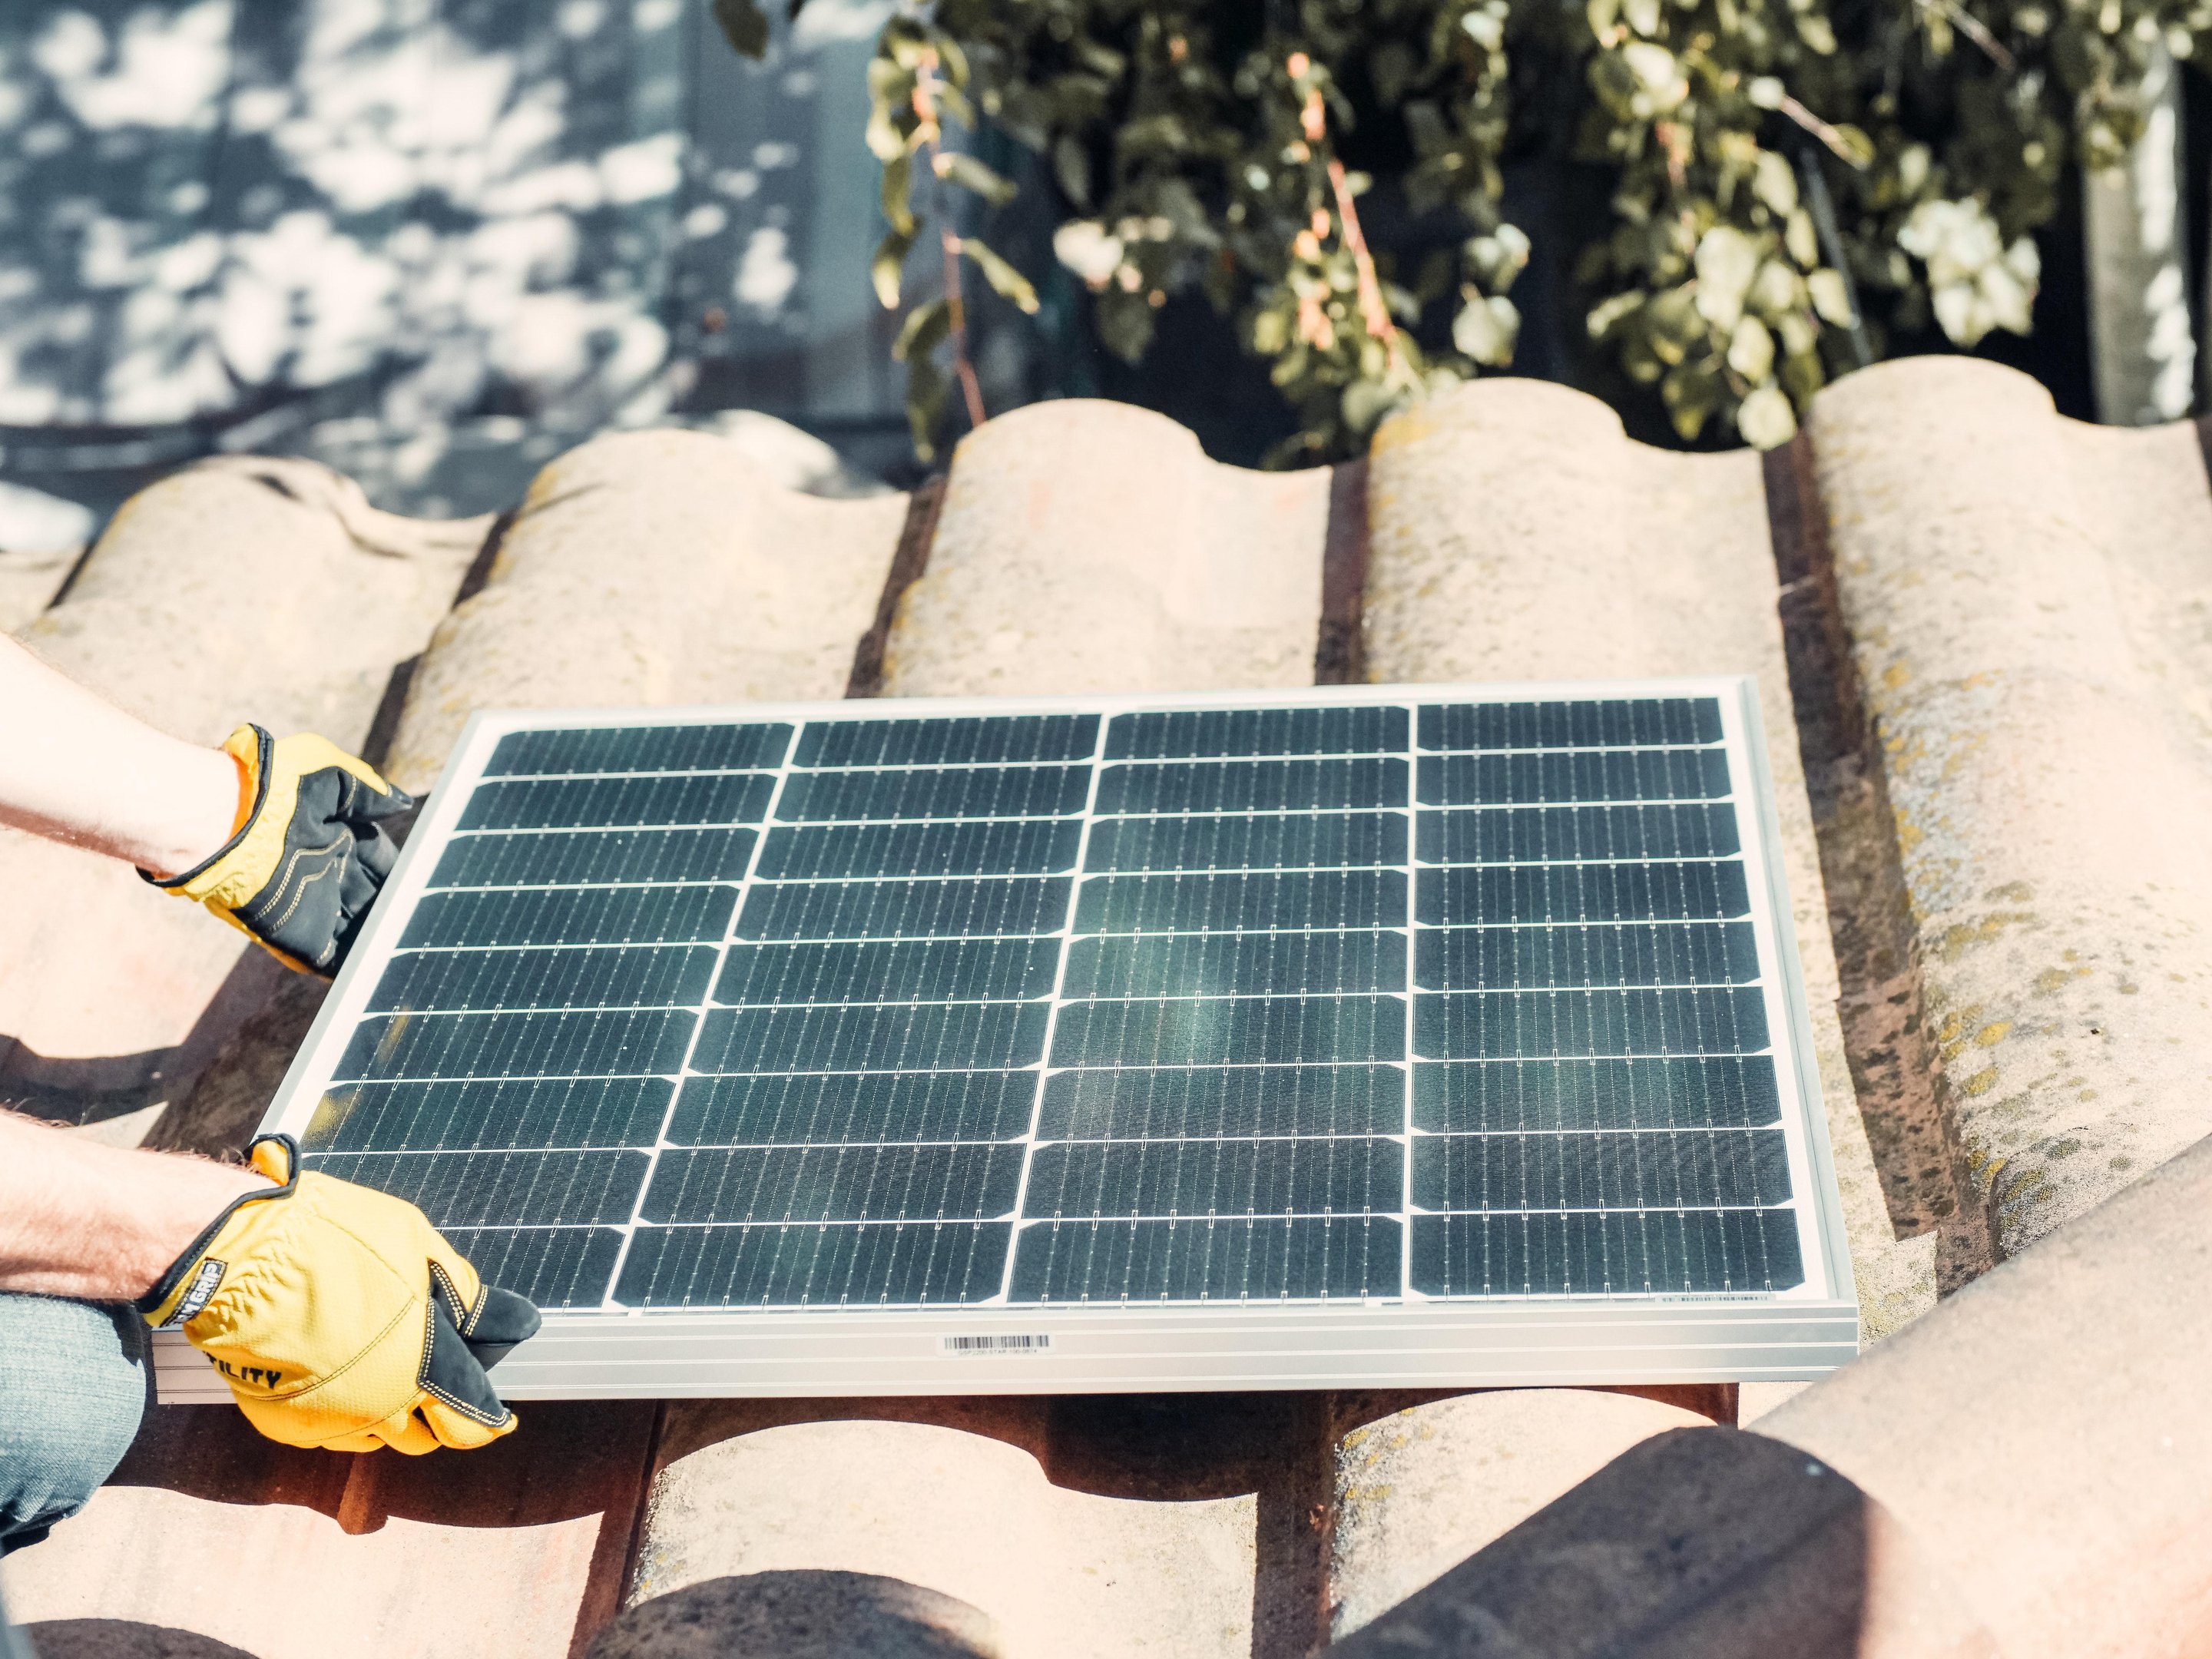 Células fotovoltaicas, geradoras de energia solar, podem ser instaladas em telhados, fachadas e até quintais (Fonte: Pexels/Kindel Media)